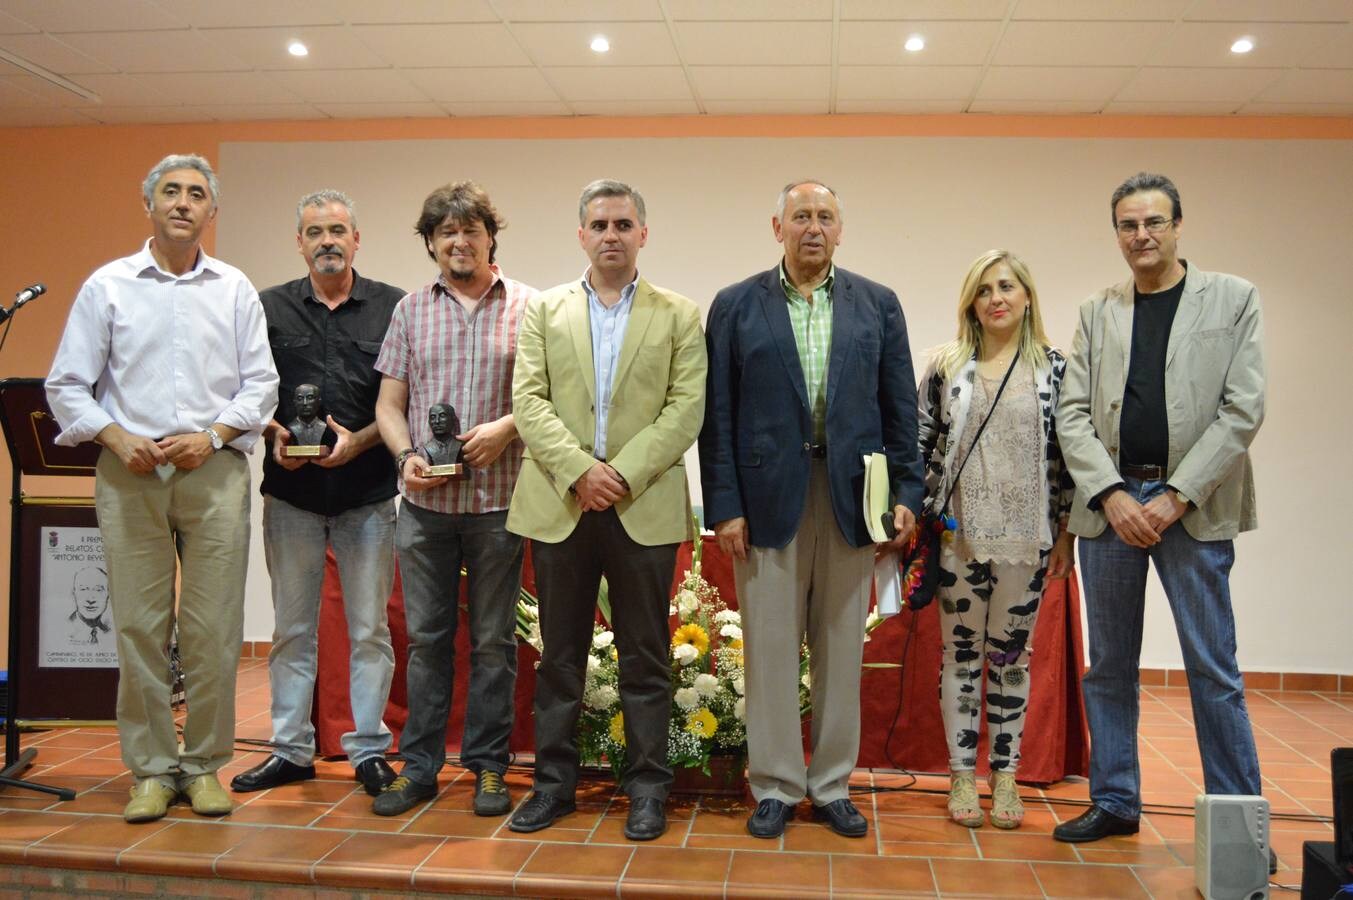 Ganadores del premio, anoche en Campanario, con autoridades y miembros del jurado. FOTO: FRAN H.